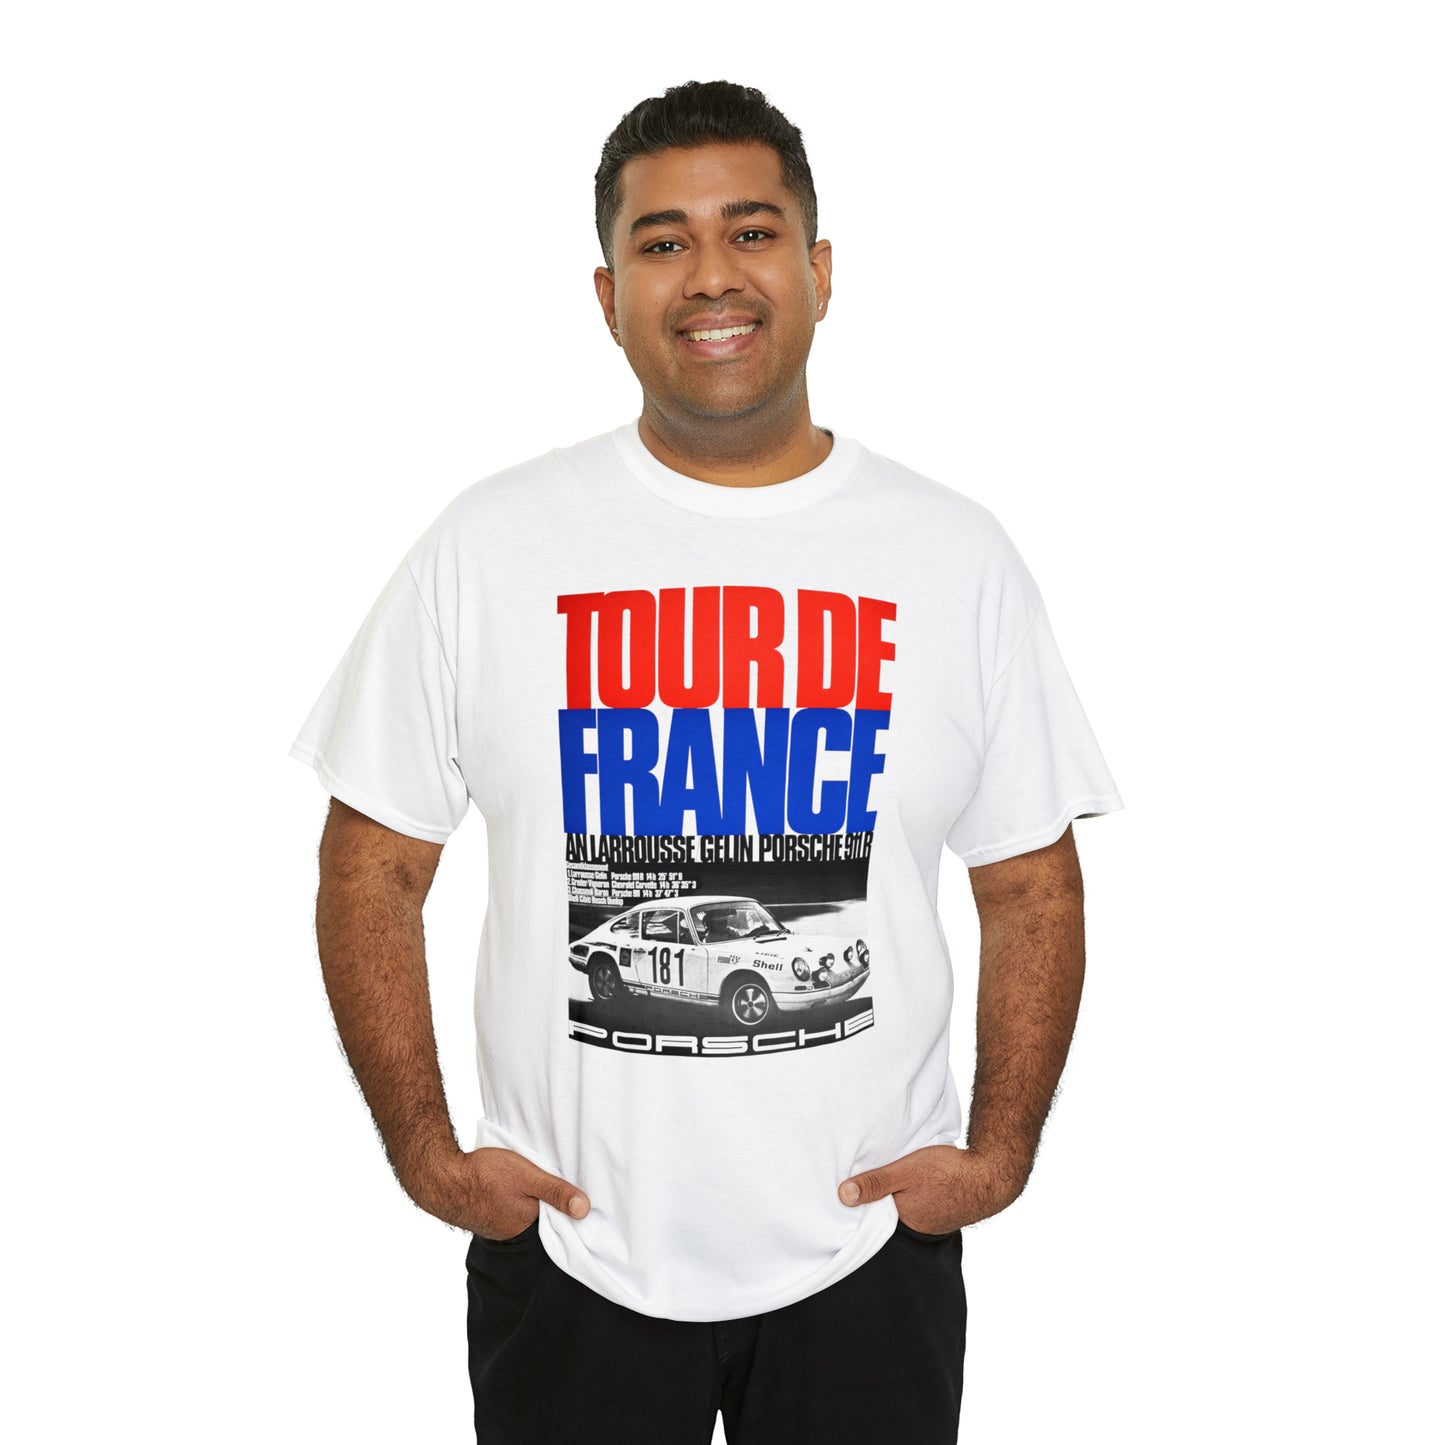 Tour de France T-Shirt